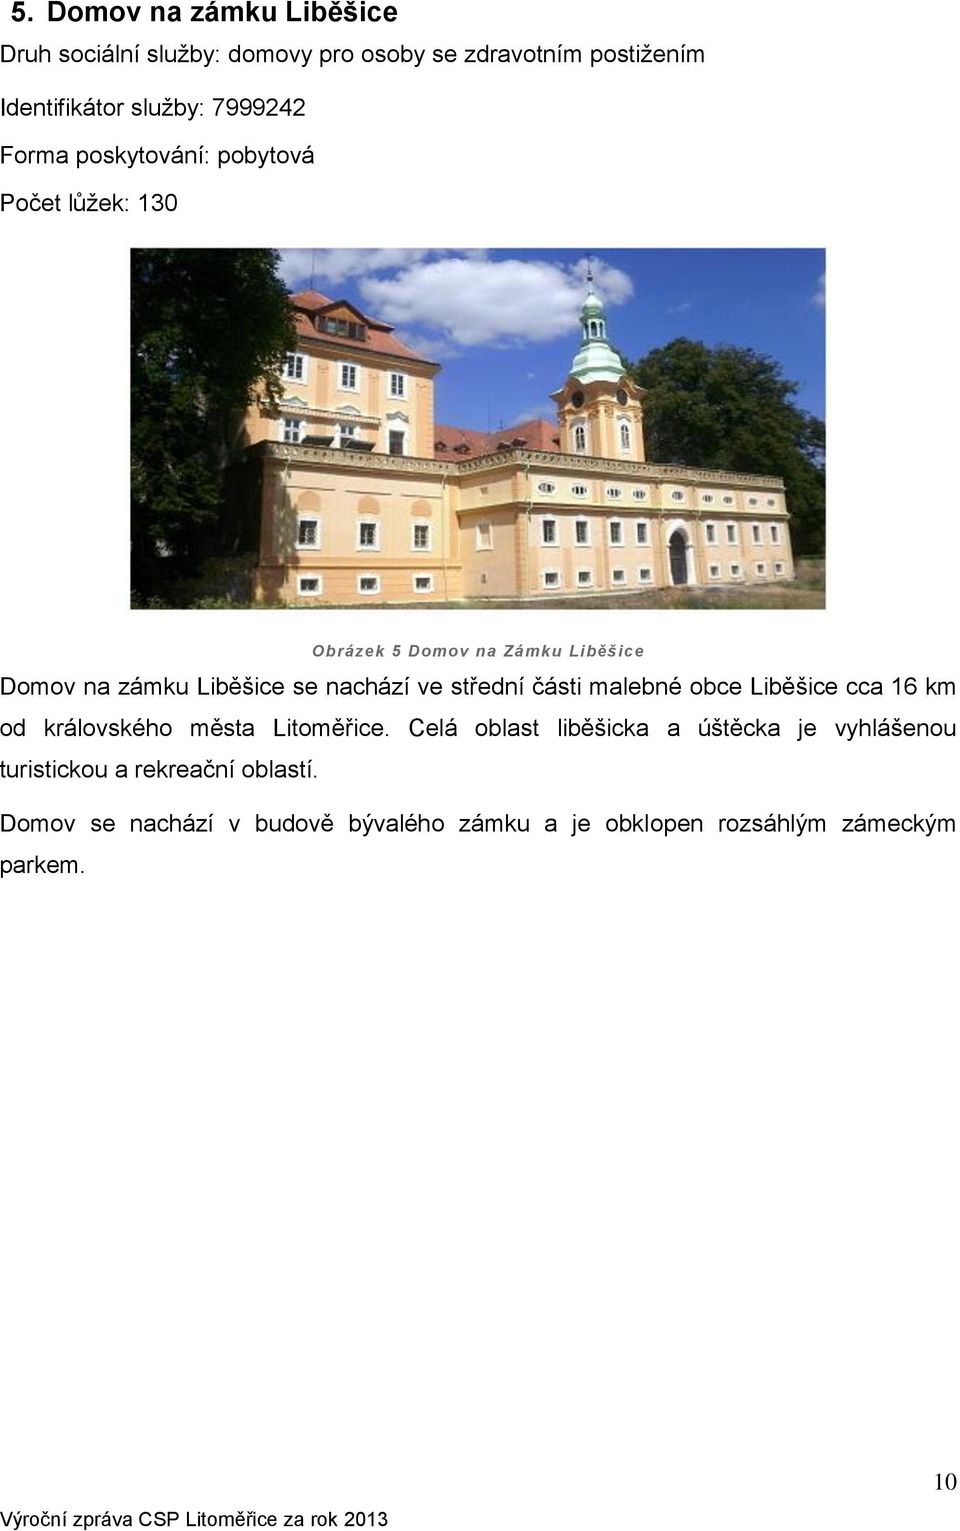 nachází ve střední části malebné obce Liběšice cca 16 km od královského města Litoměřice.